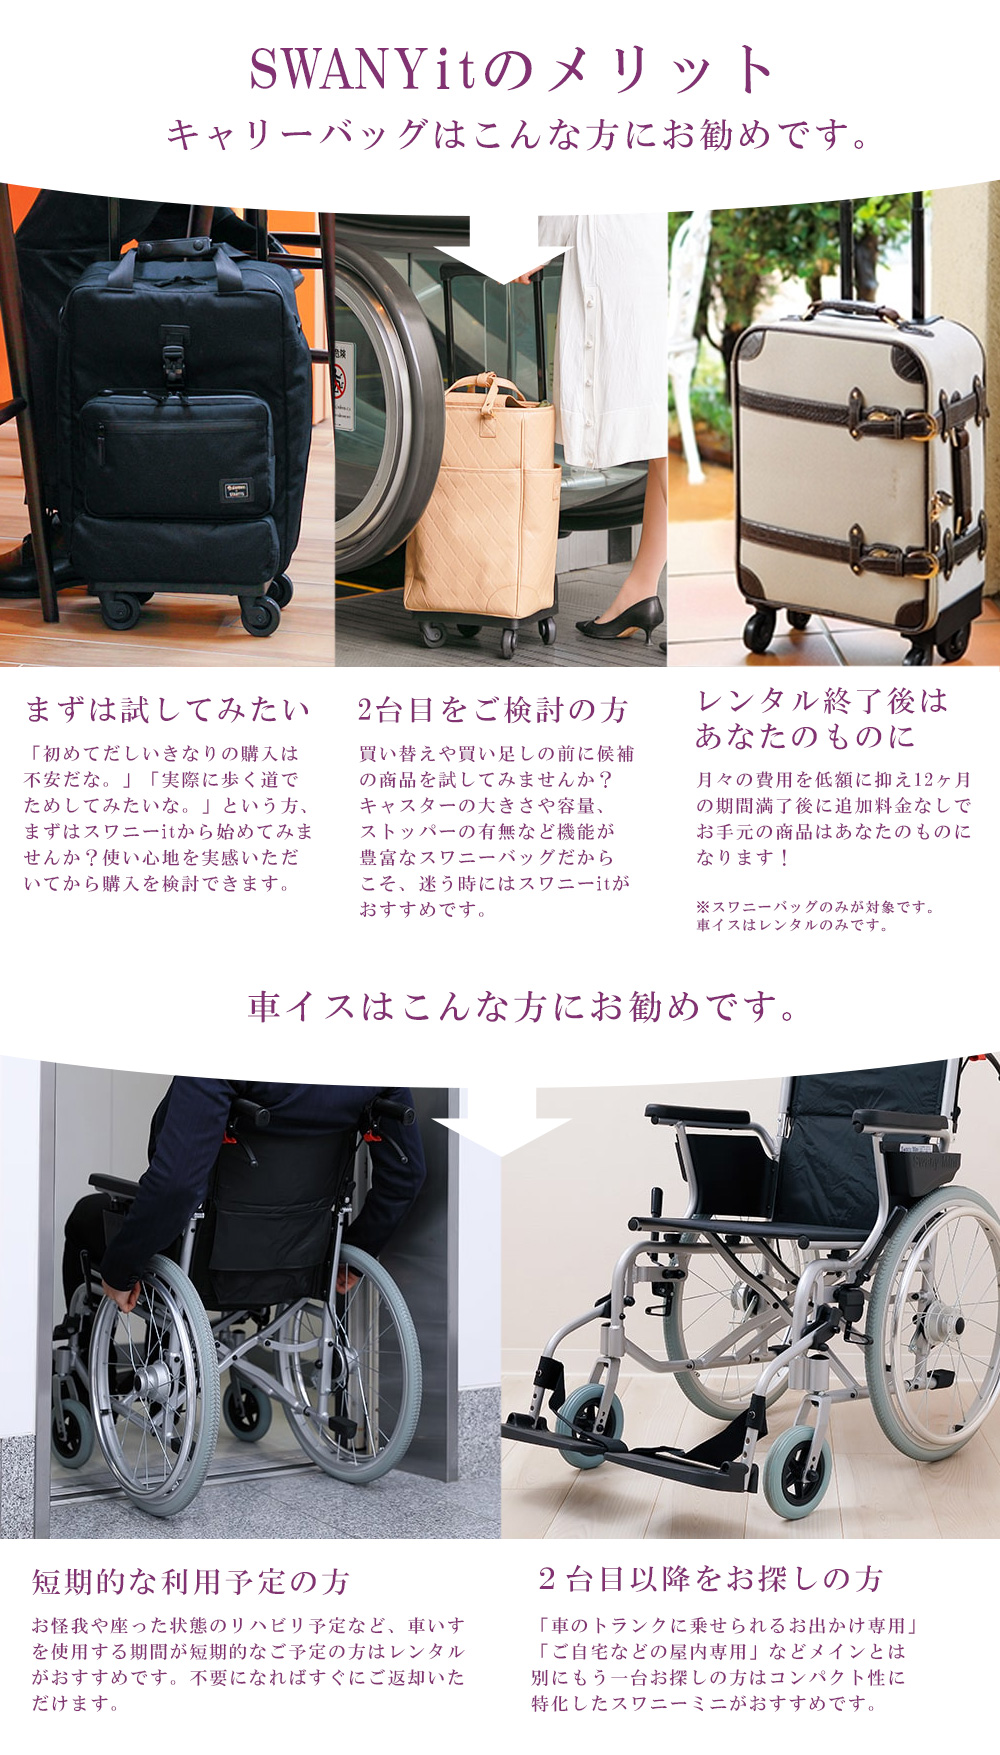 SWANY（スワニー）バッグ・キャリーバッグ・車椅子のレンタル/アウトレット（中古）販売サービス。スワニーit